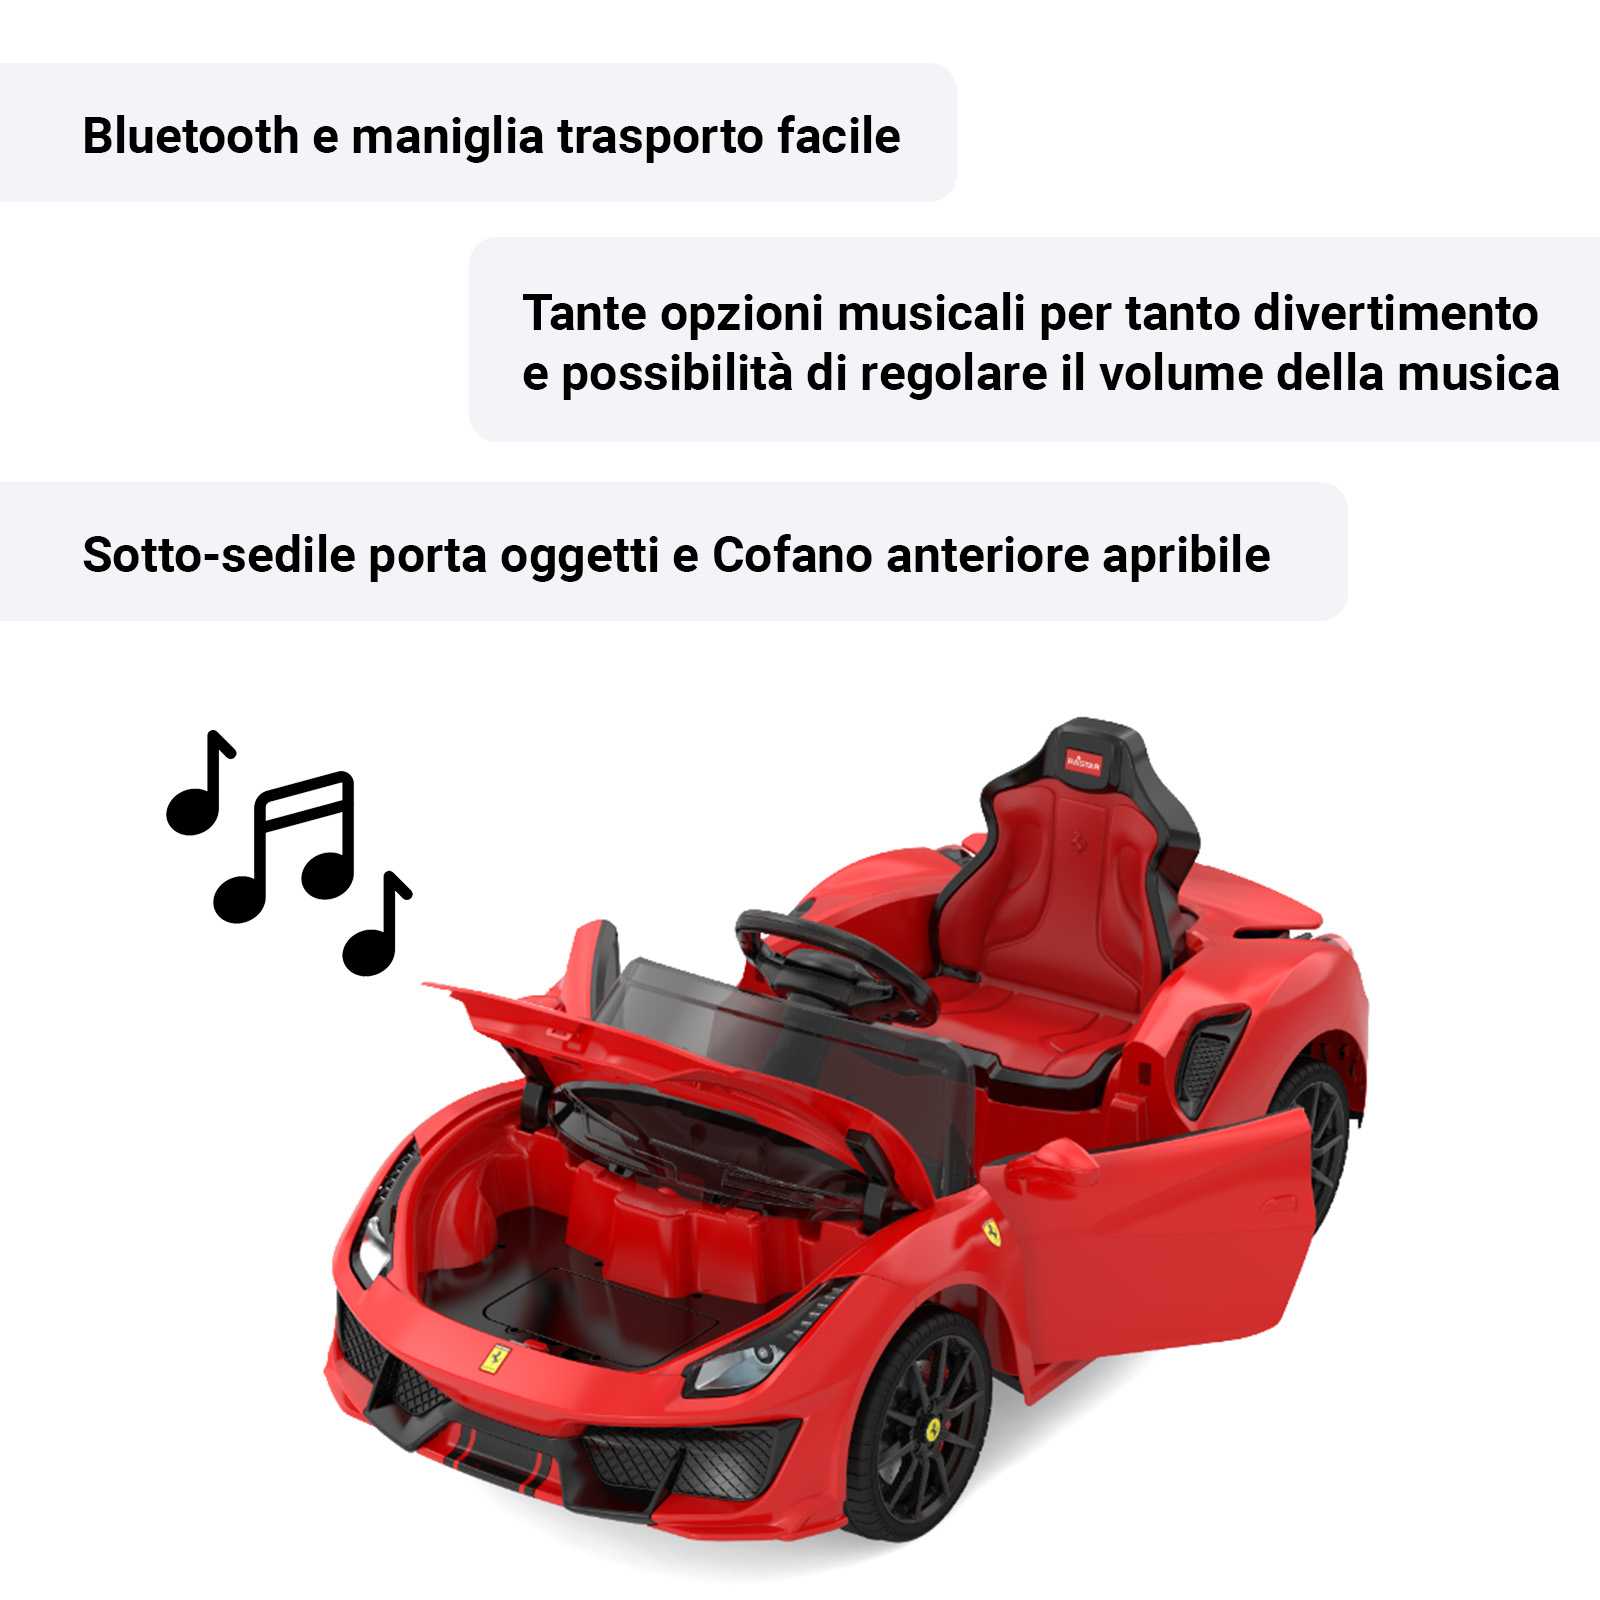 Bluetooth opzioni musicali e sotto-sedile porta oggetti